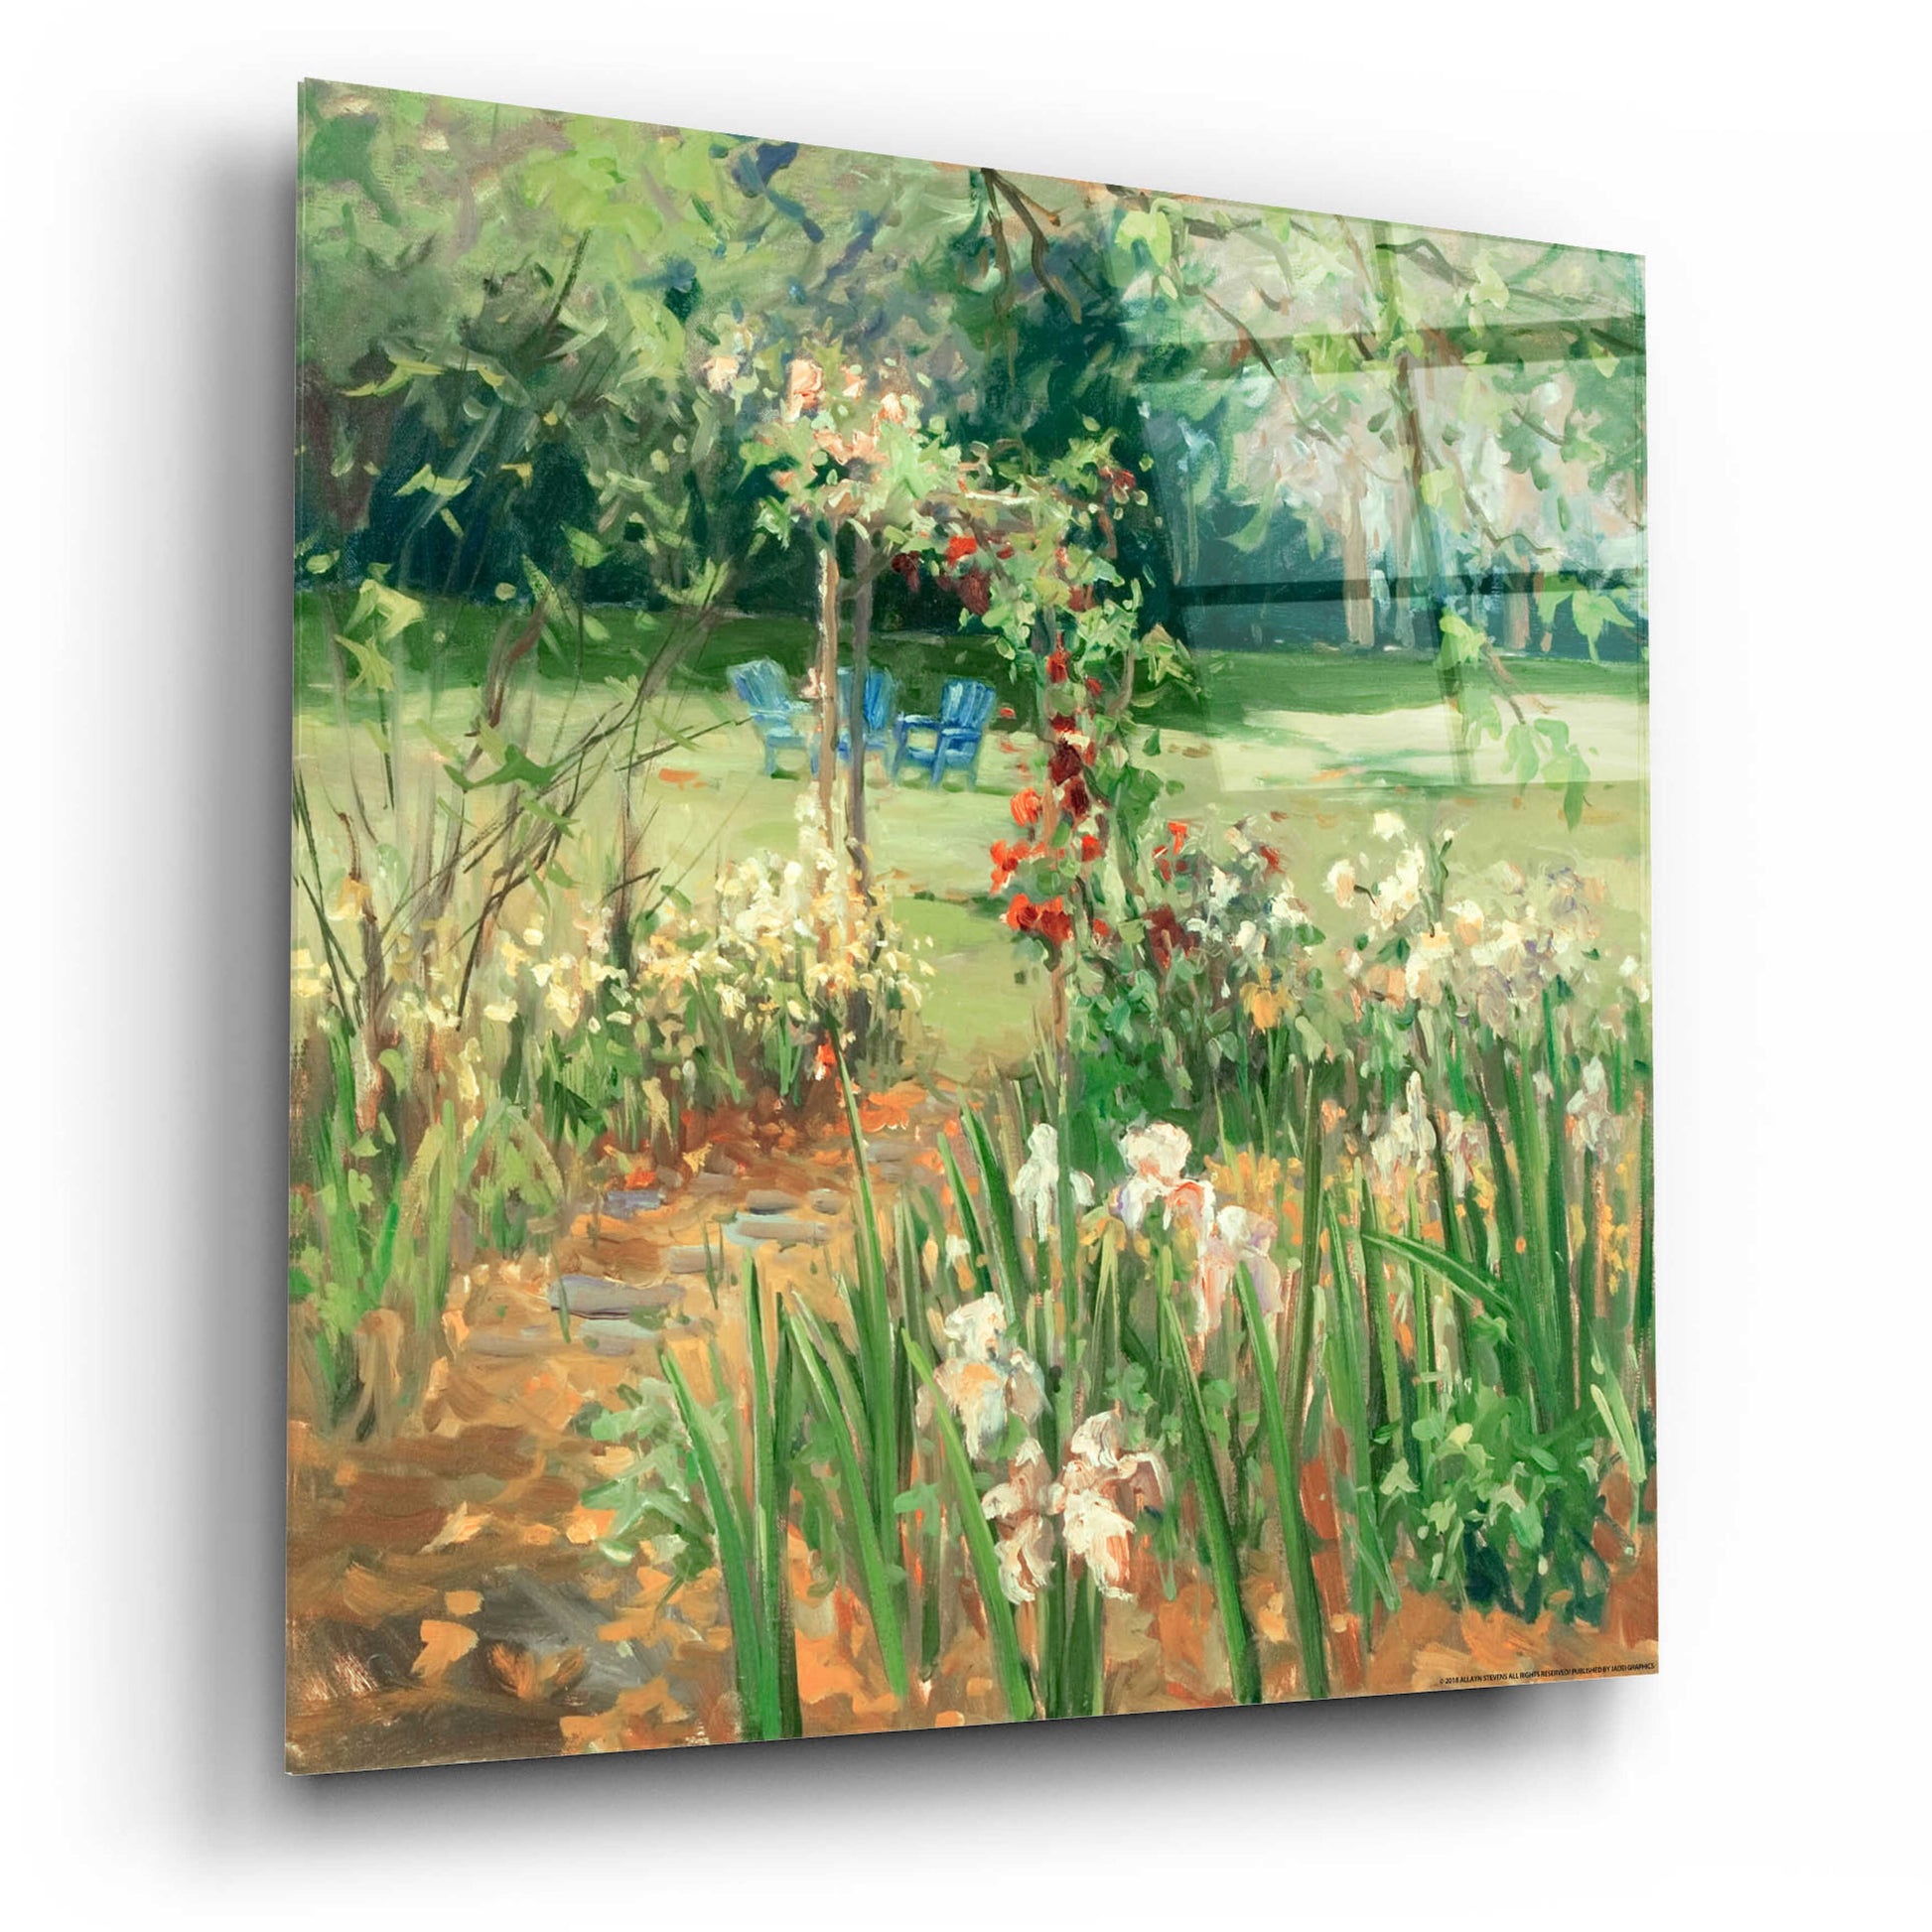 Epic Art 'Iris Garden' by Allayn Stevens, Acrylic Glass Wall Art,12x12